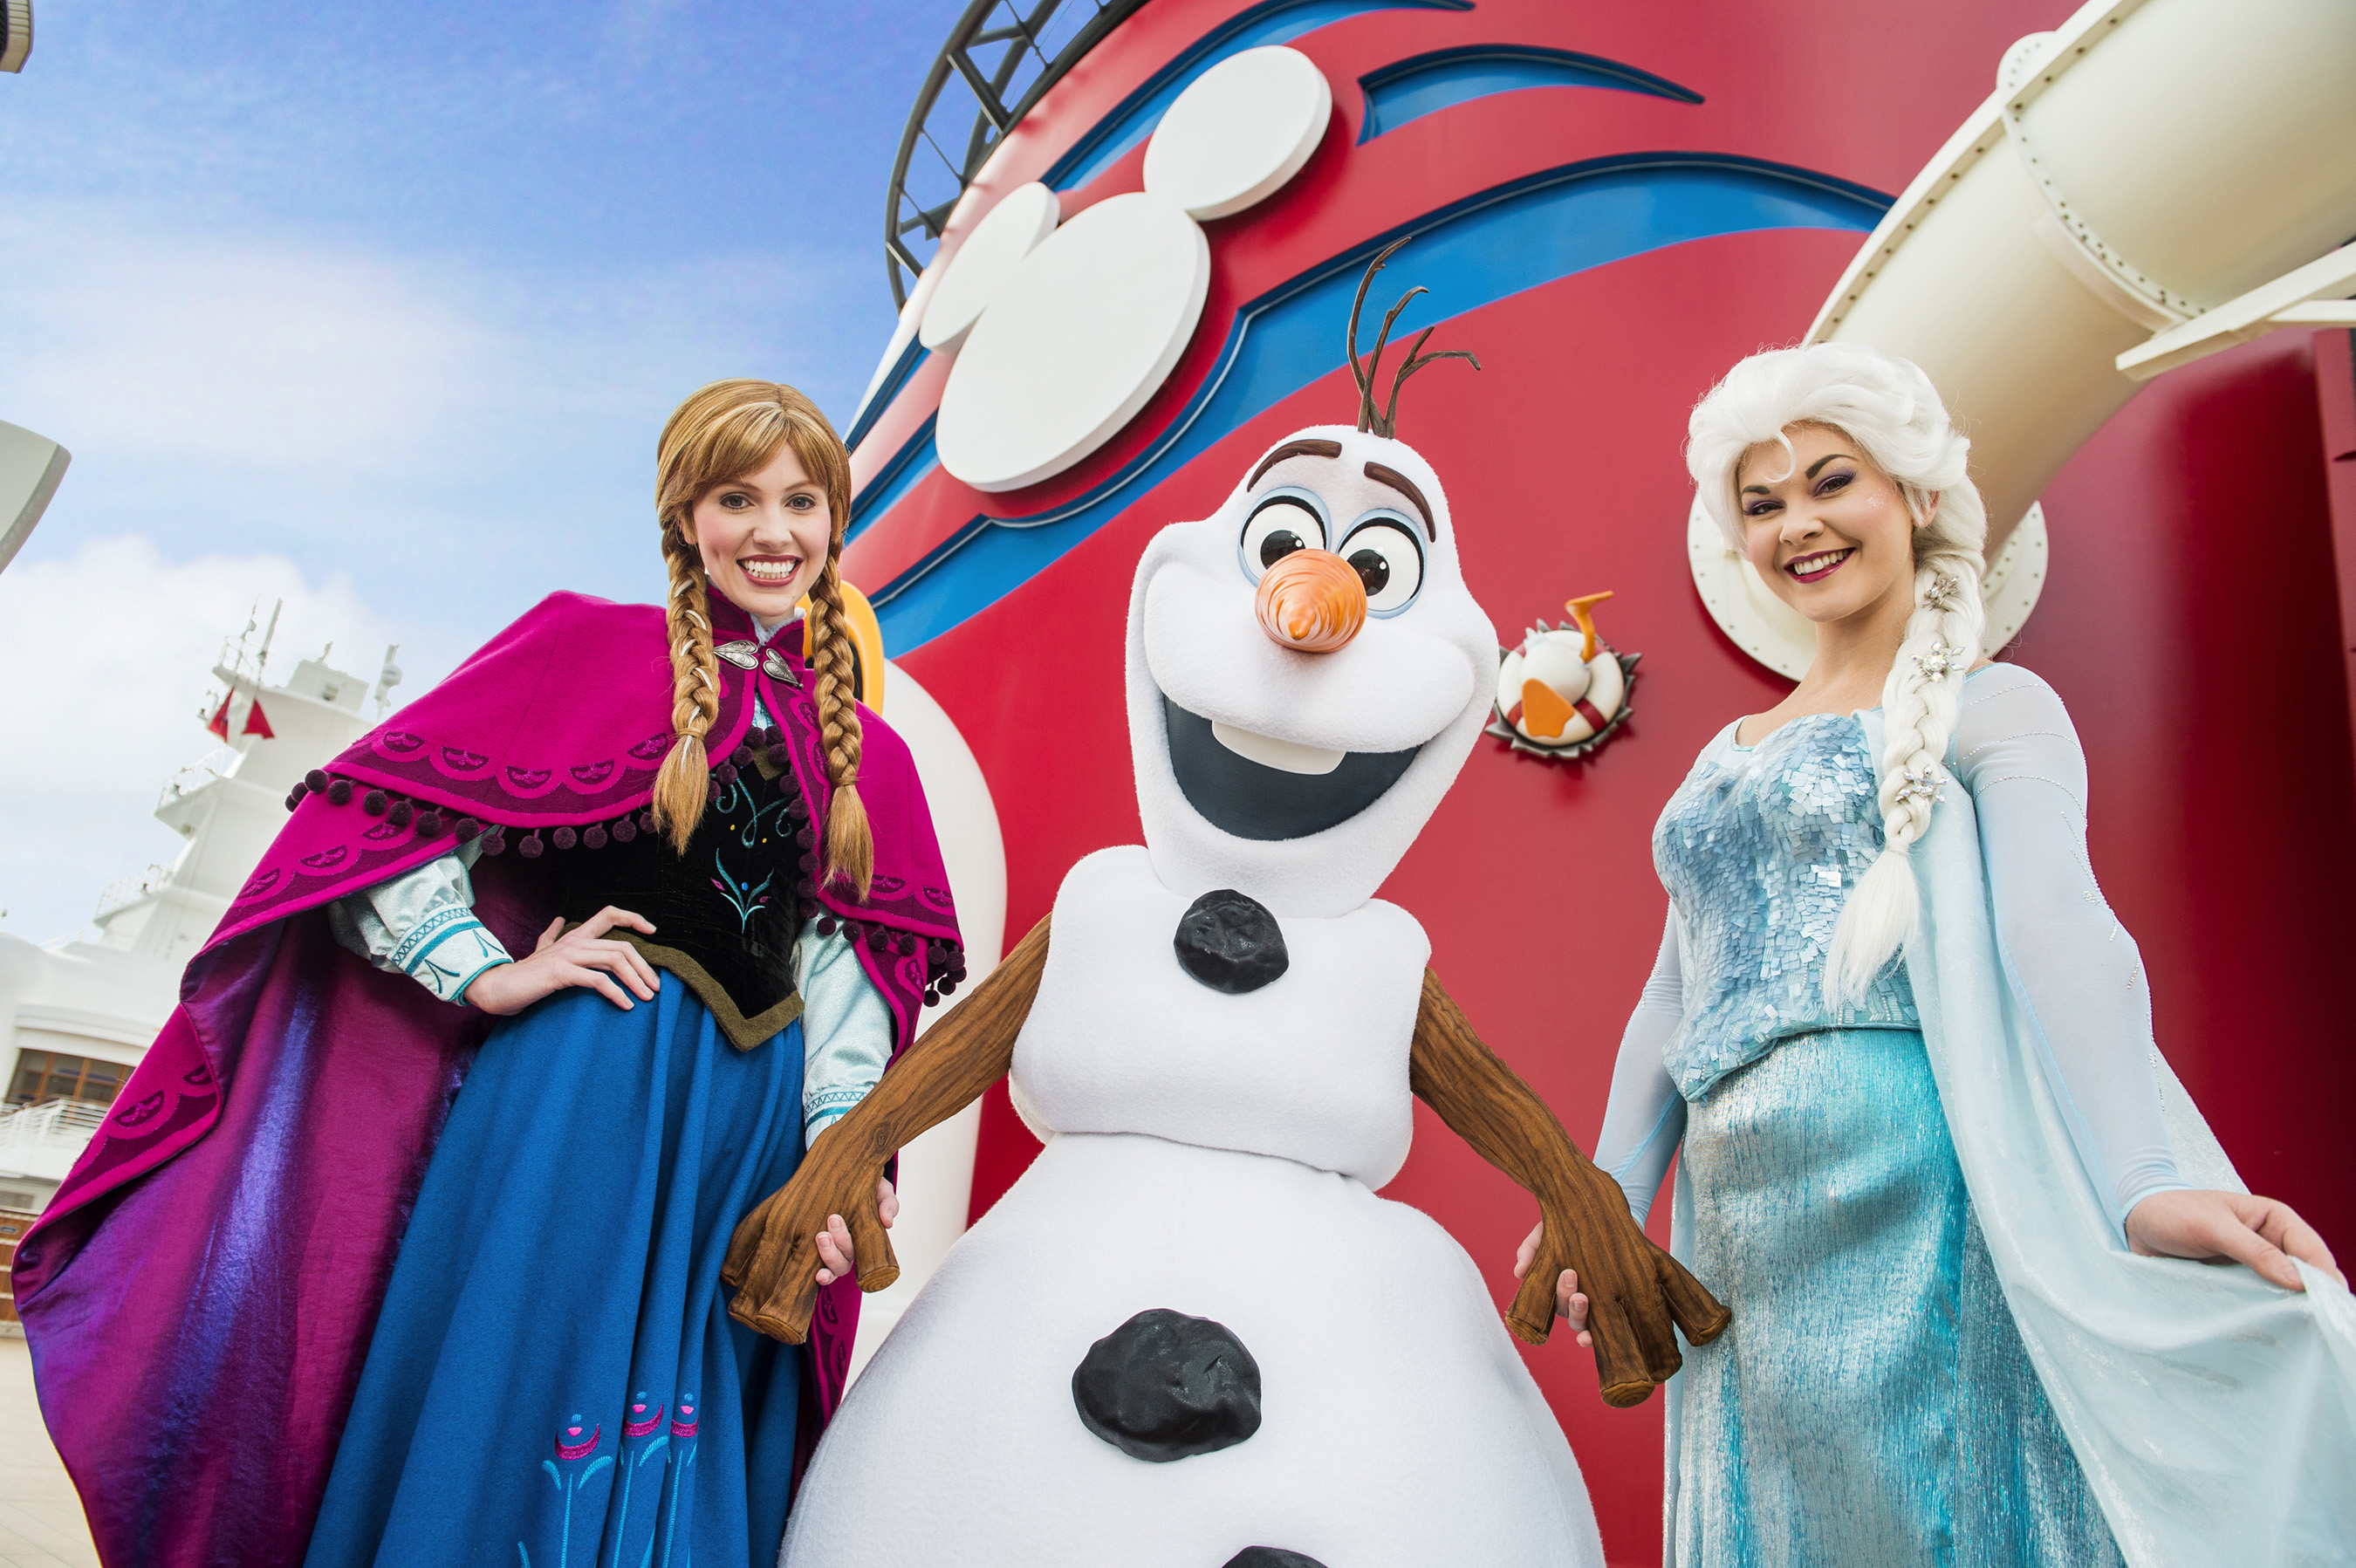 Anna & Elsa on Disney Cruise ship with Olaf